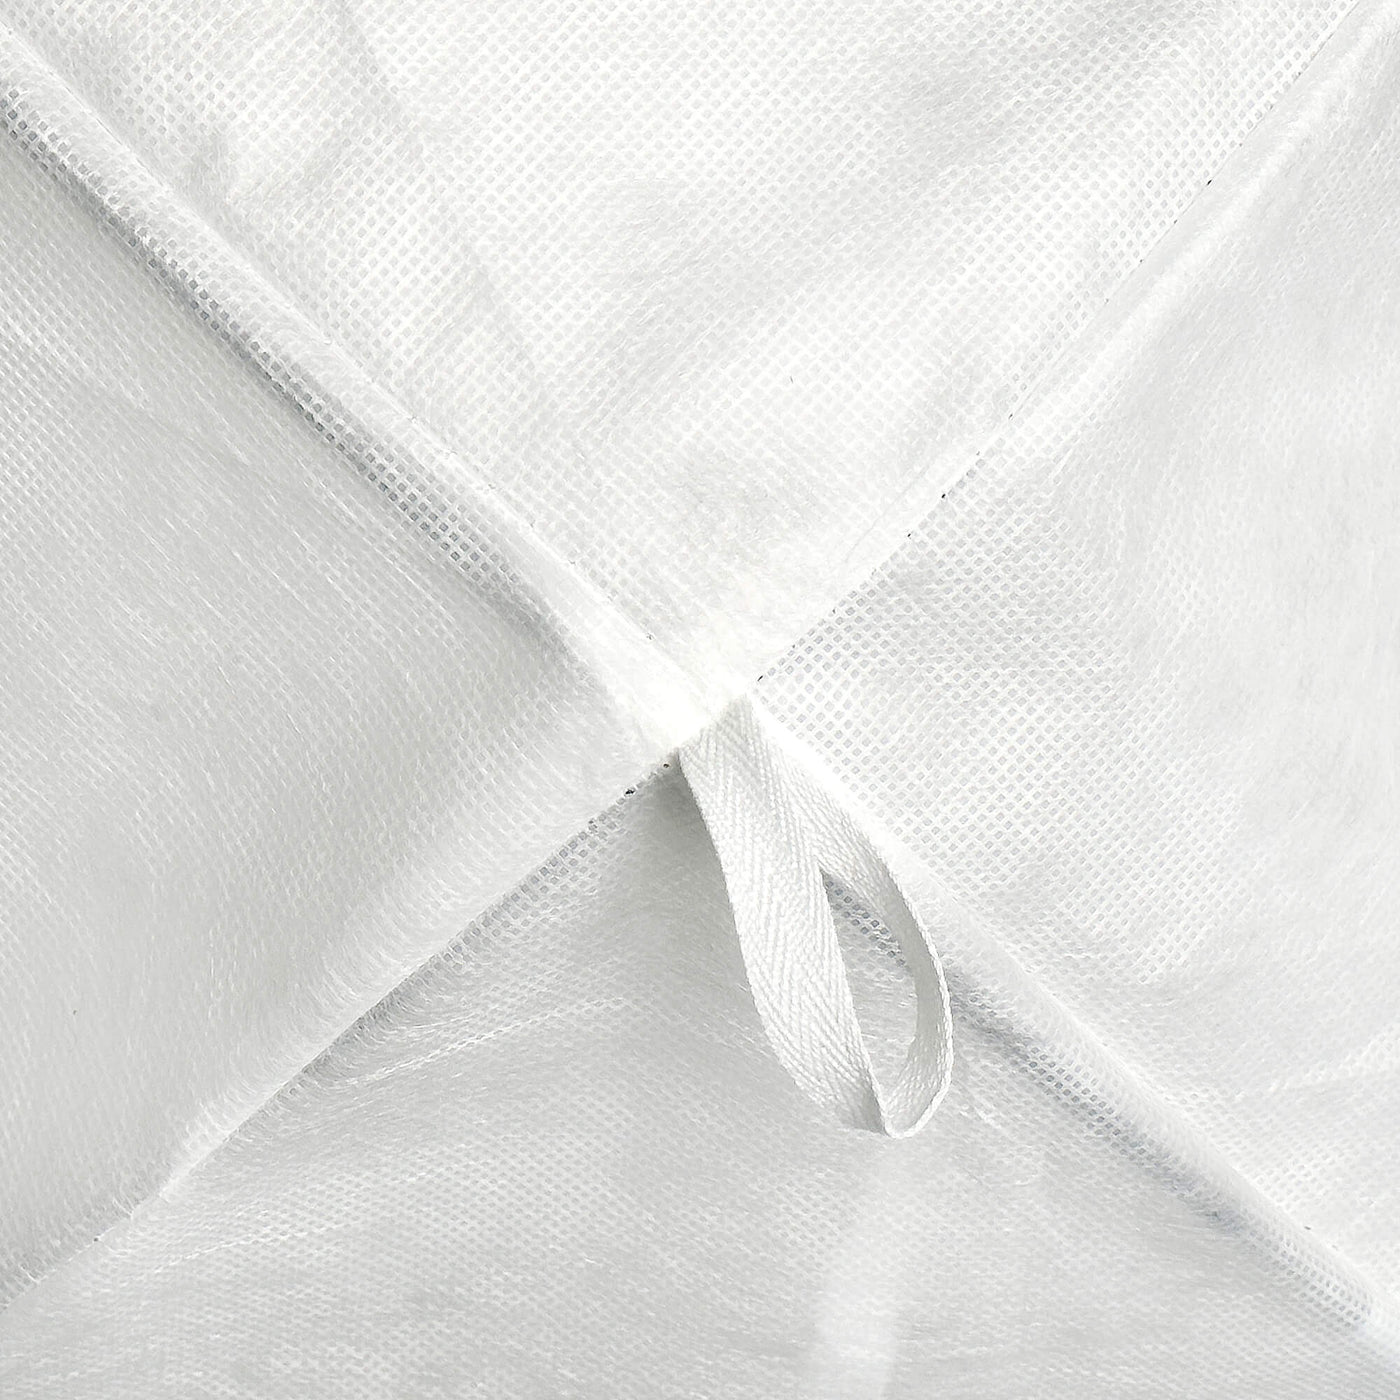 Heartcosy Winter Shrub Cover Nonwoven Cloth Biodegradable